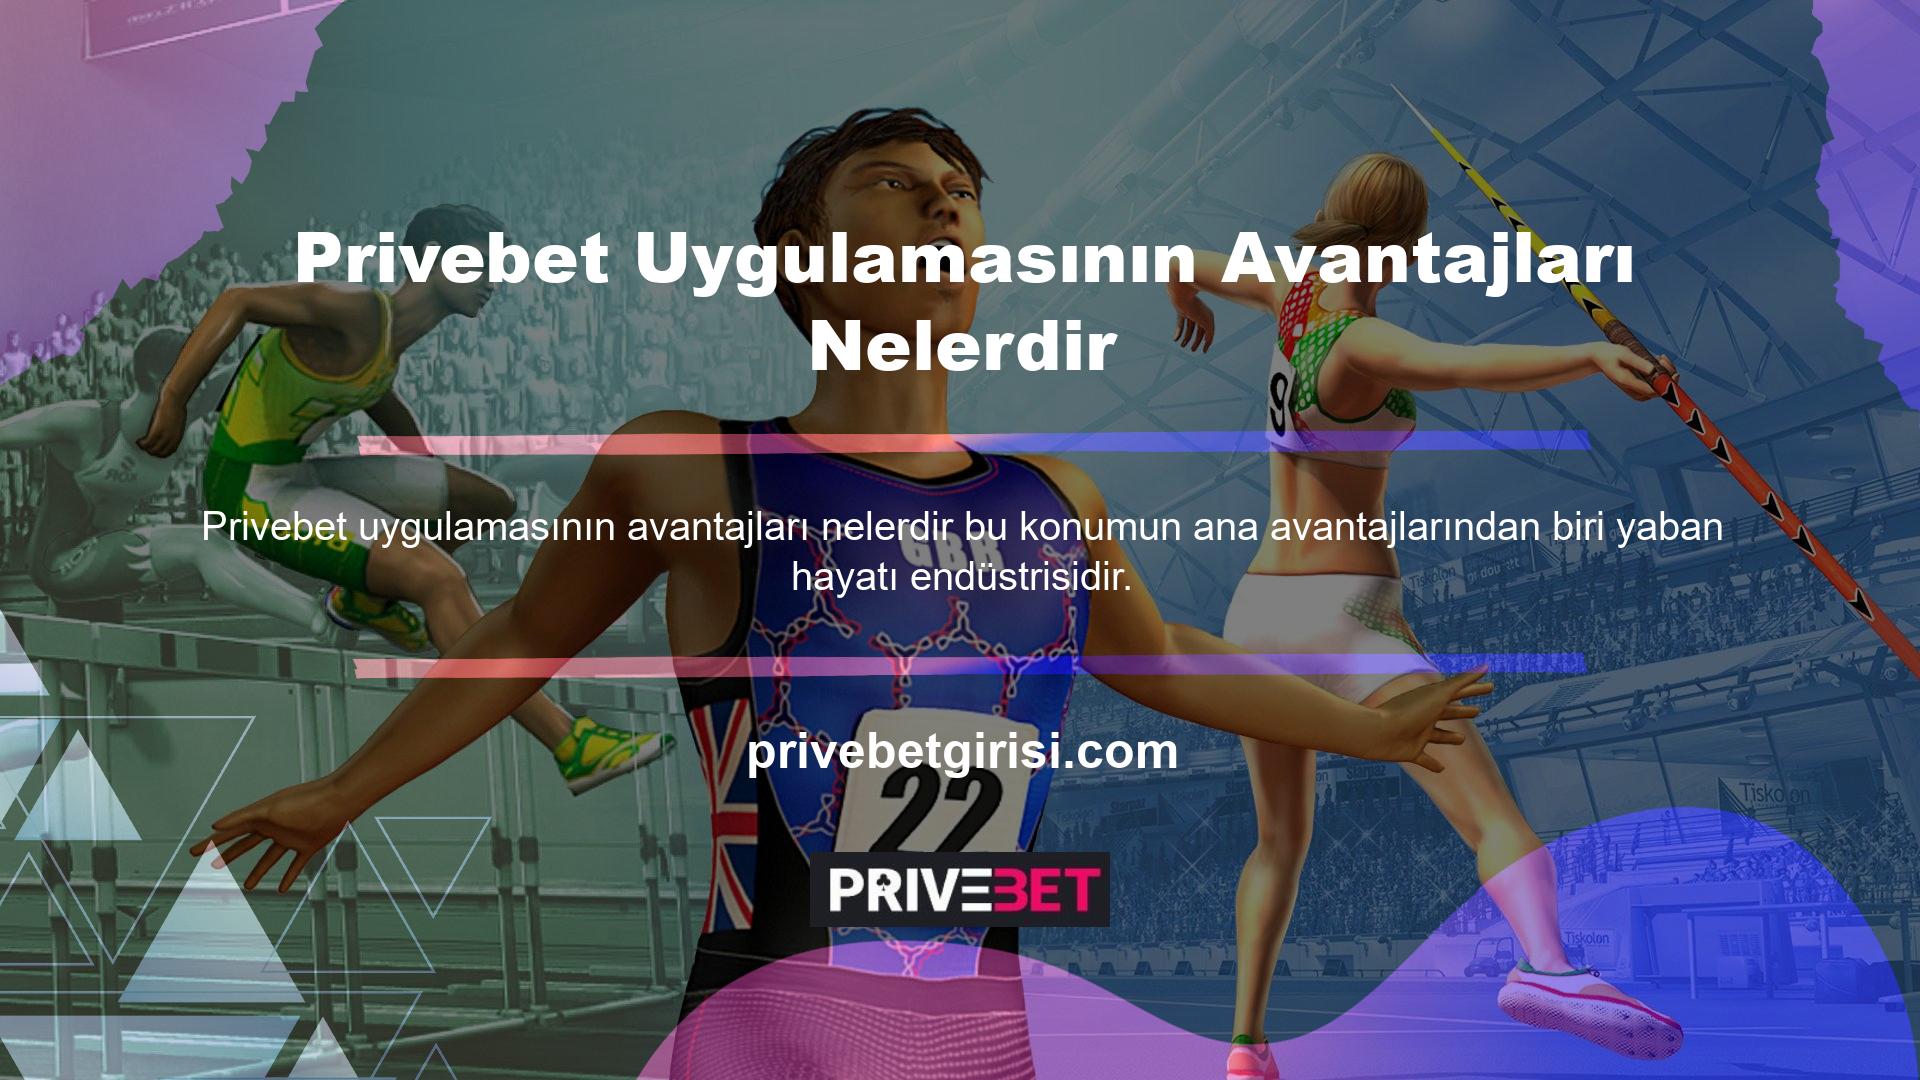 Özellikle Privebet, ülkenin her yerinden kullanıcıların keyif aldığı ve katıldığı oyunları bünyesinde barındırdığı için geniş bir kullanıcı kitlesine sahiptir